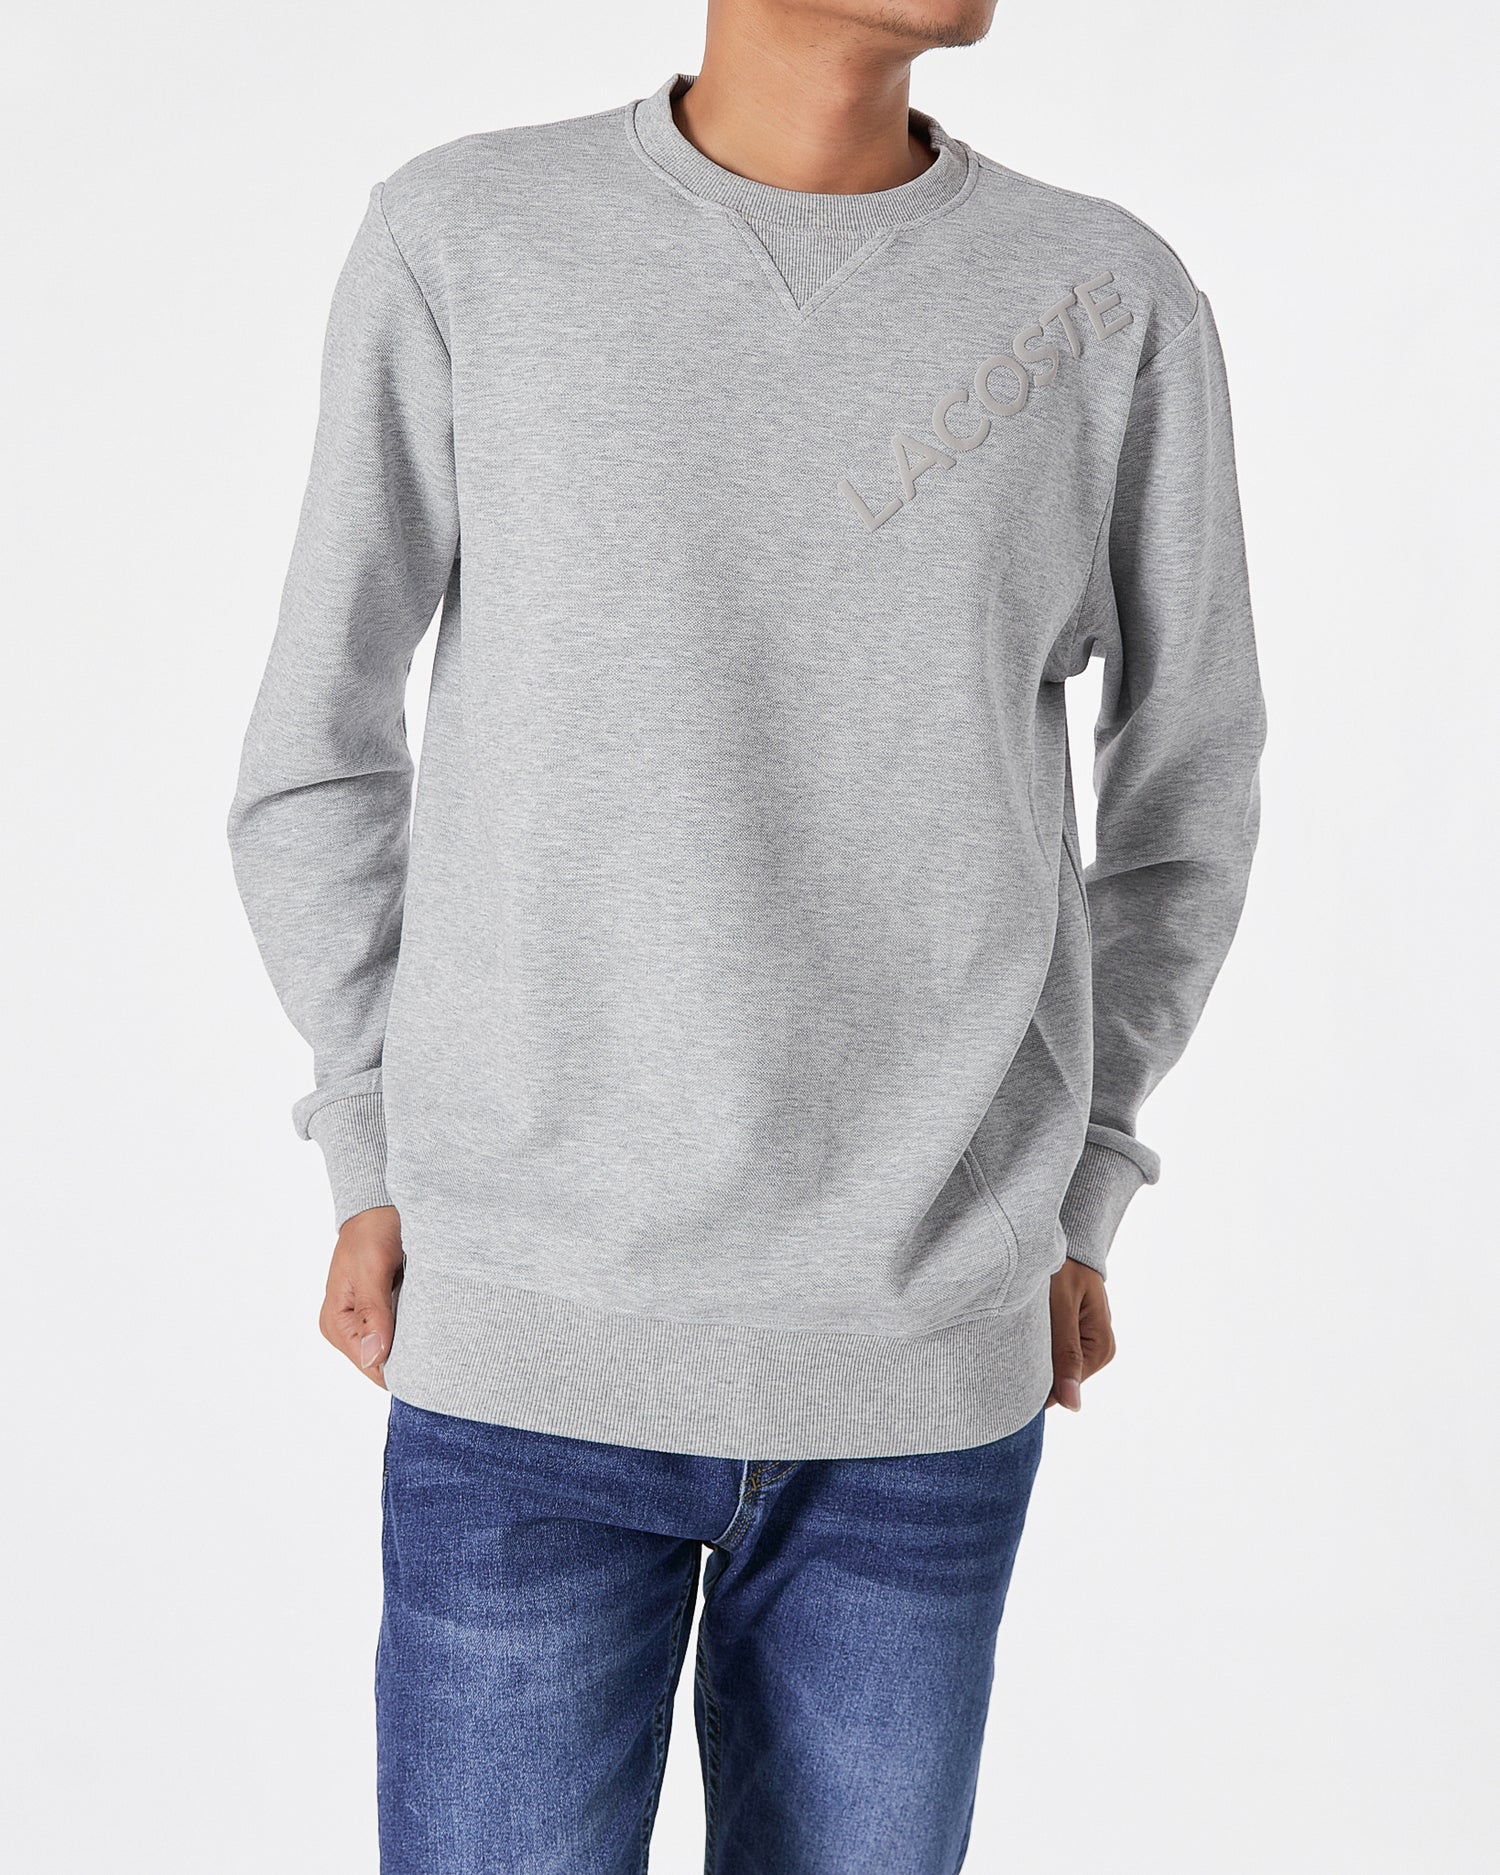 LAC Plain Color Men Grey Sweater 22.90